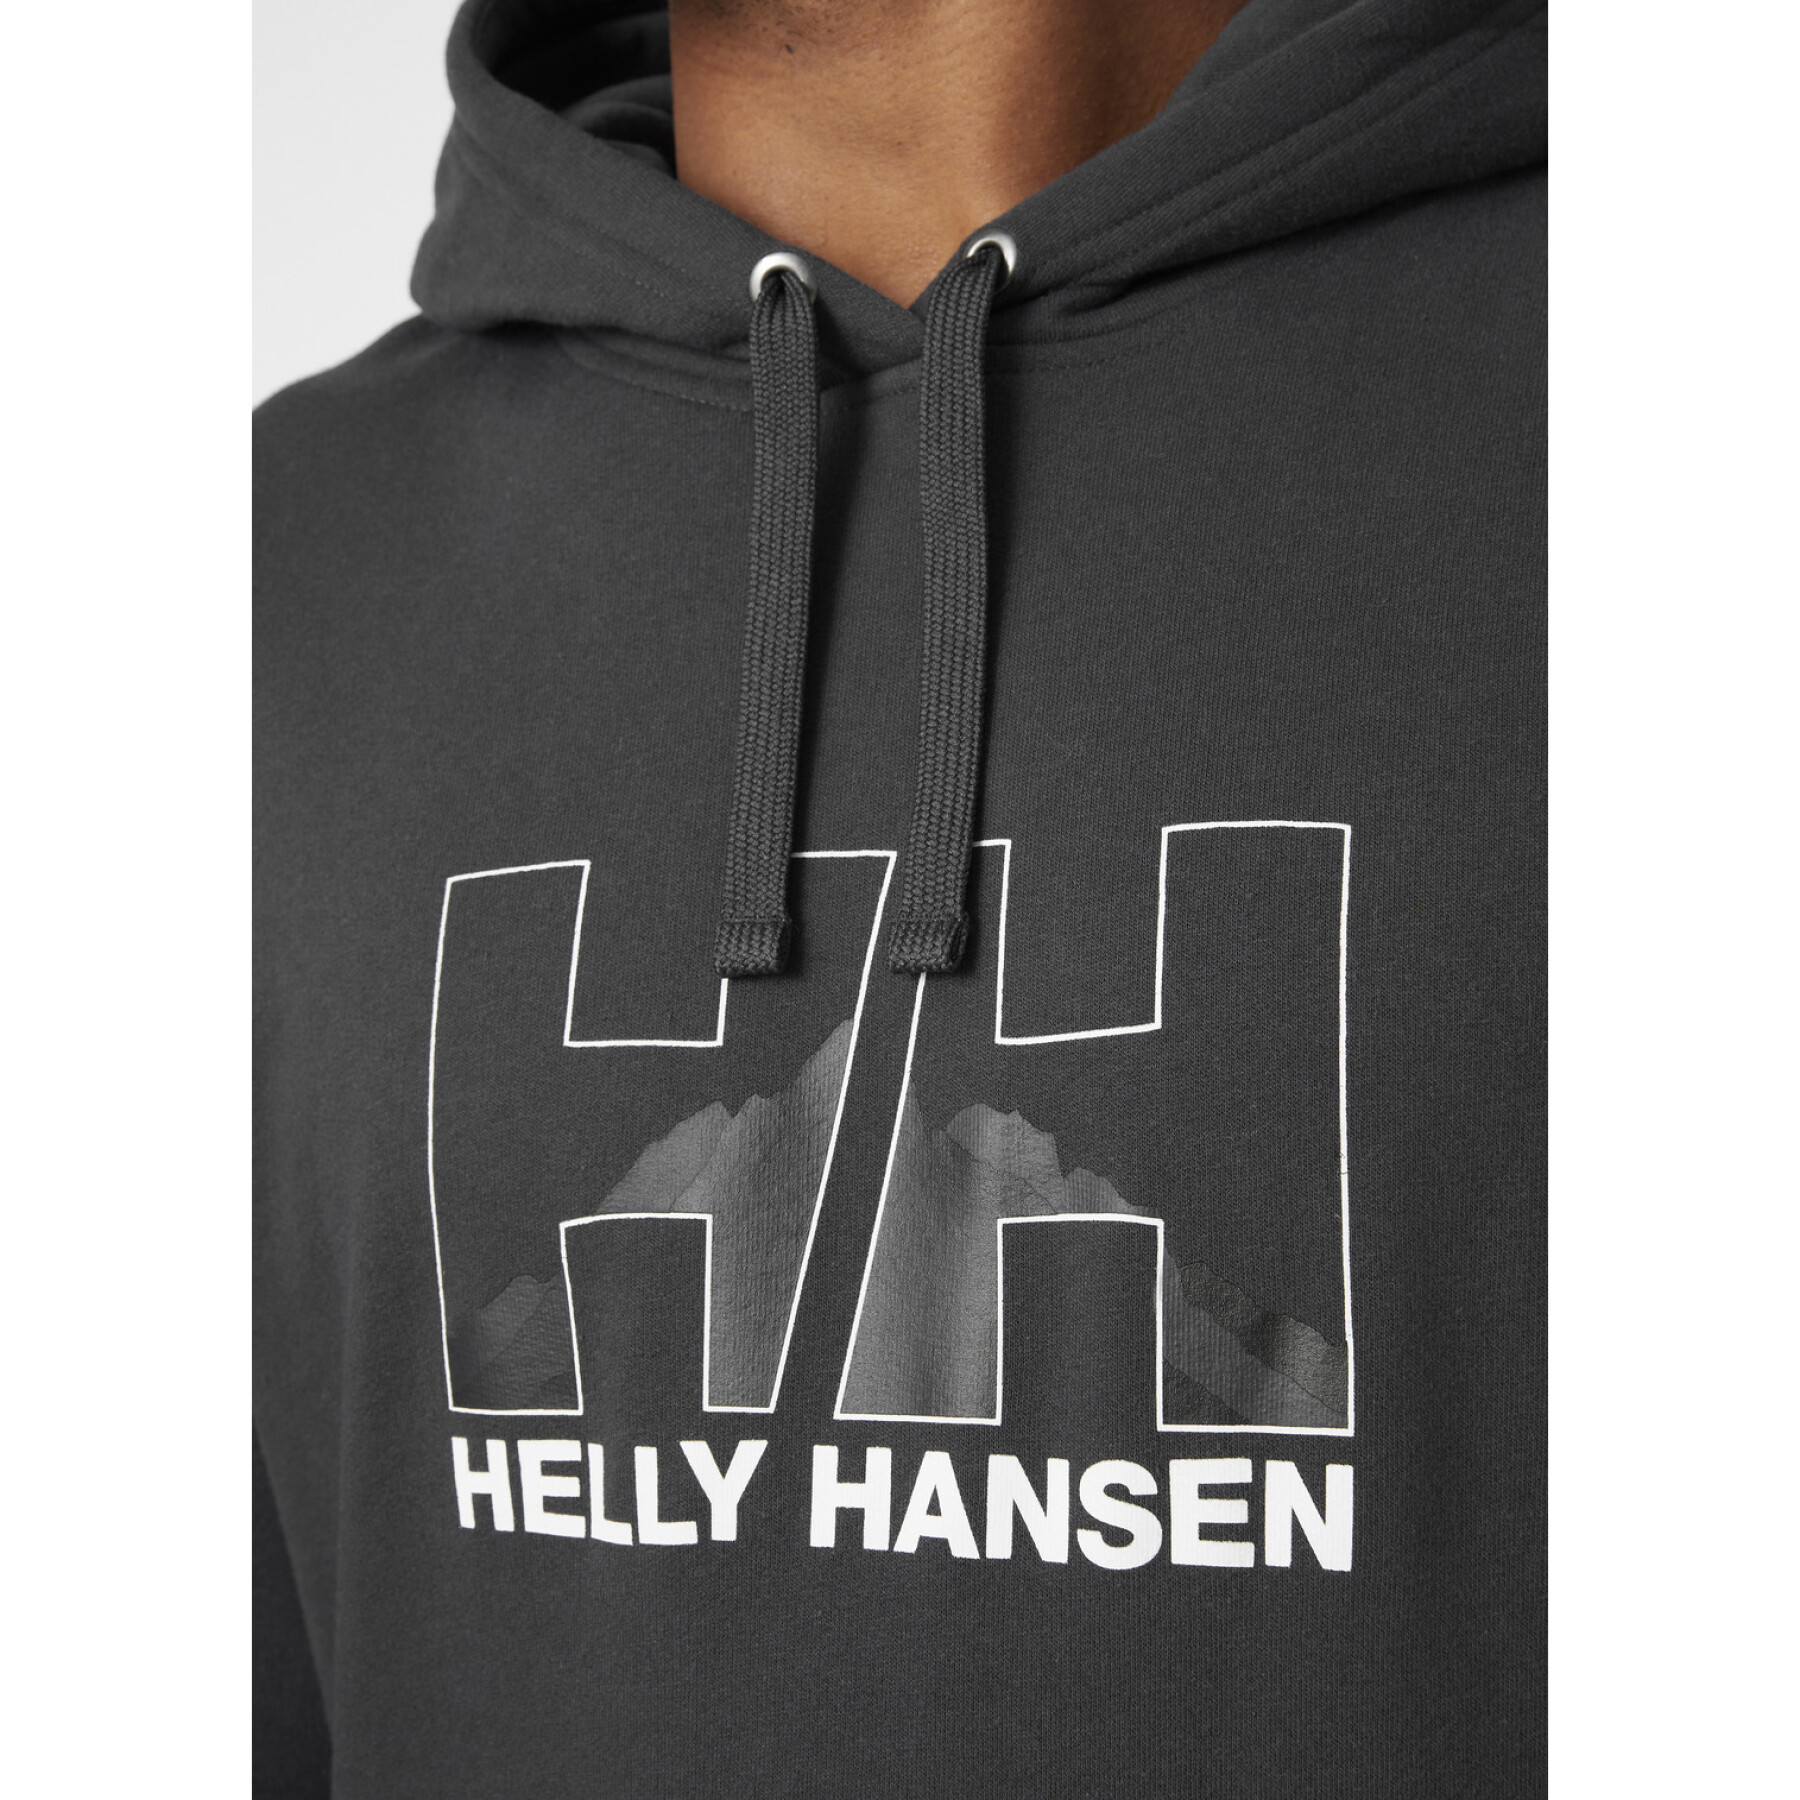 Sweatshirt med huva Helly Hansen nord graphic